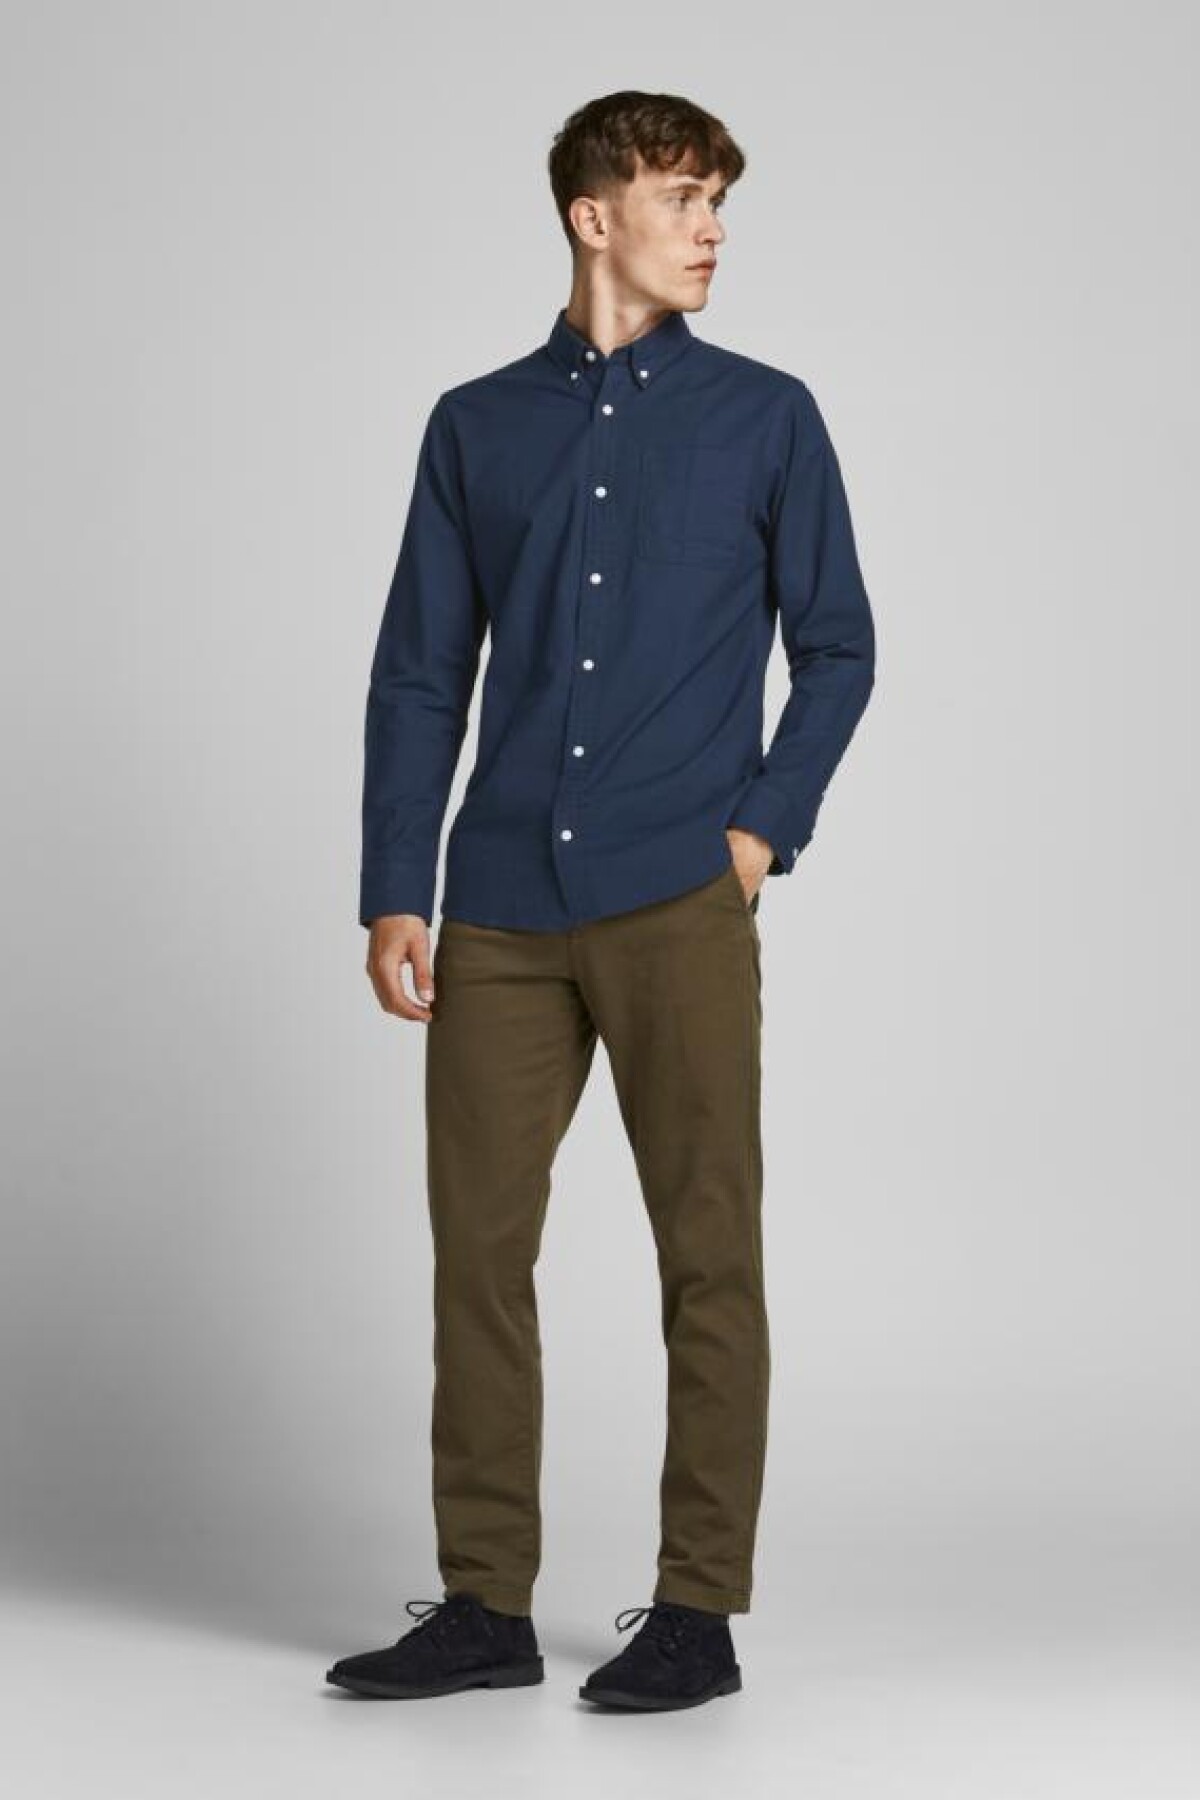 Camisa Oxford Clásica Navy Blazer